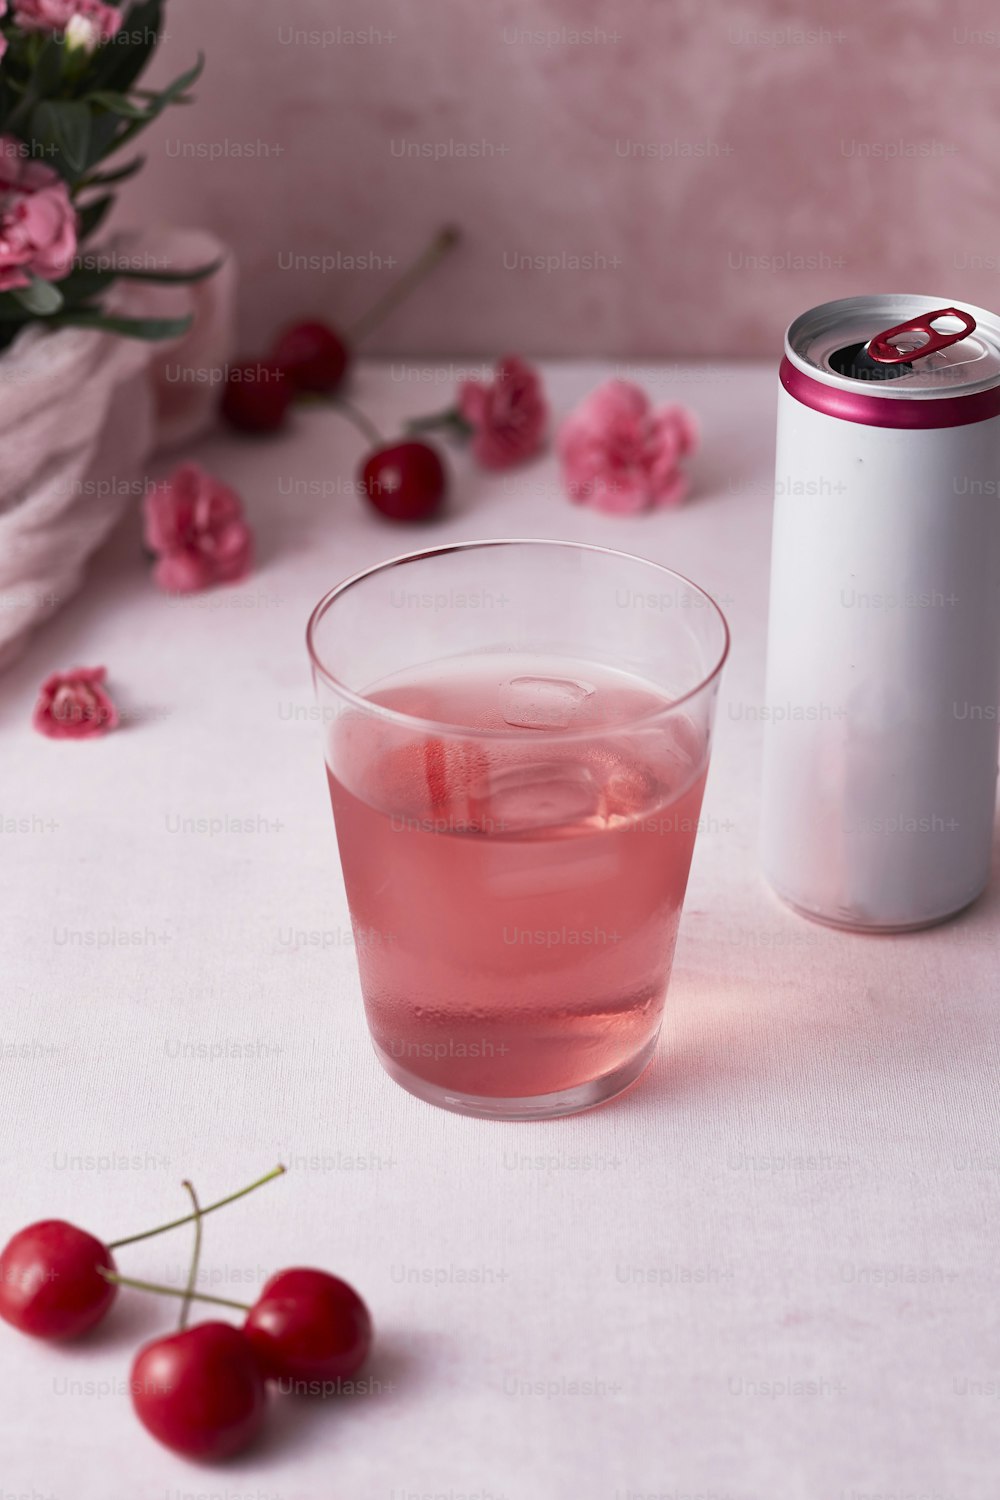 Un verre de liquide rose à côté d’une canette de soda